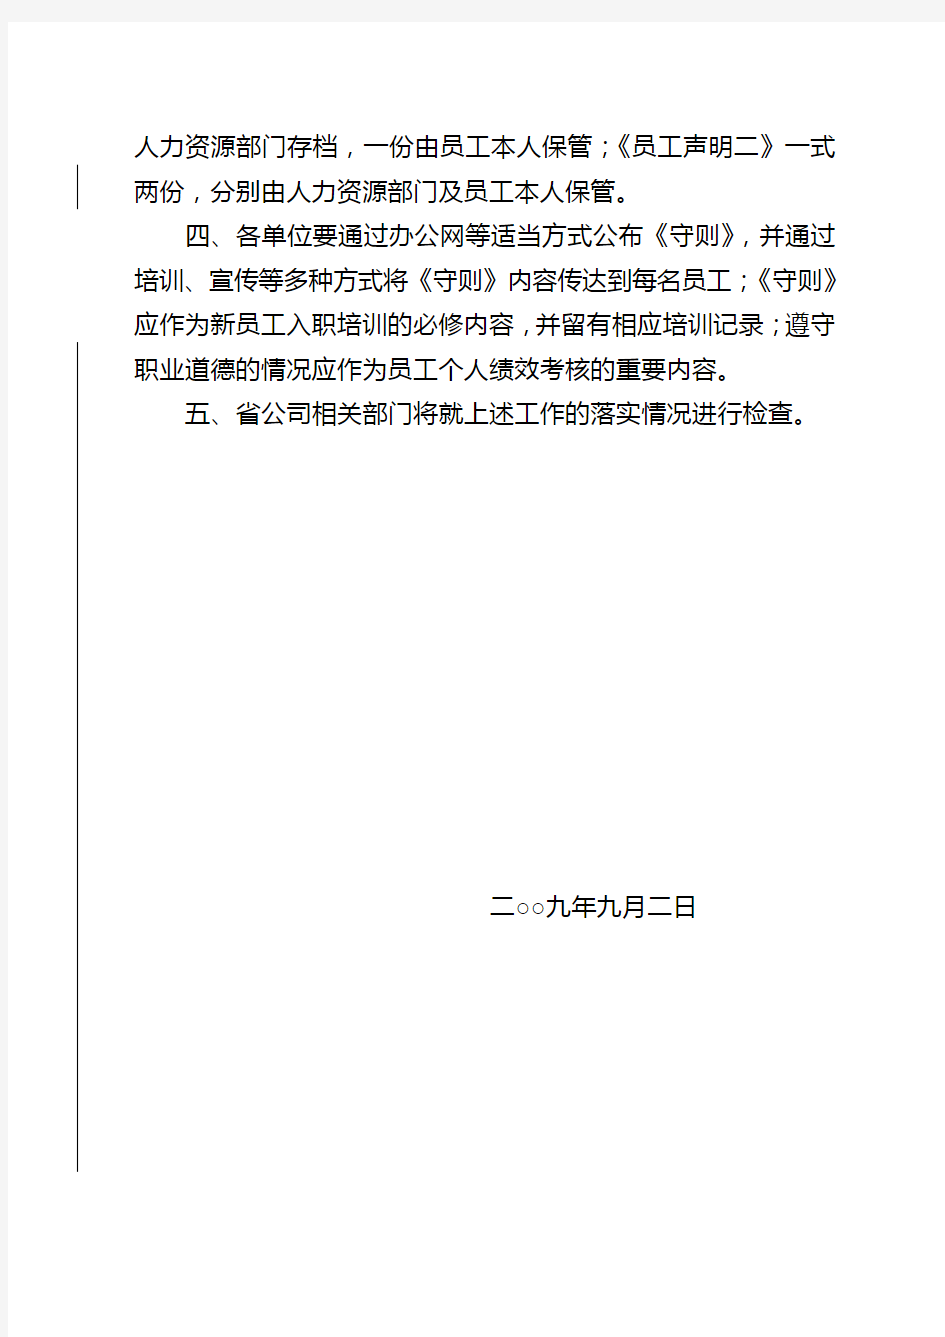 中国联合网络通信(香港)股份有限公司员工职业道德守则